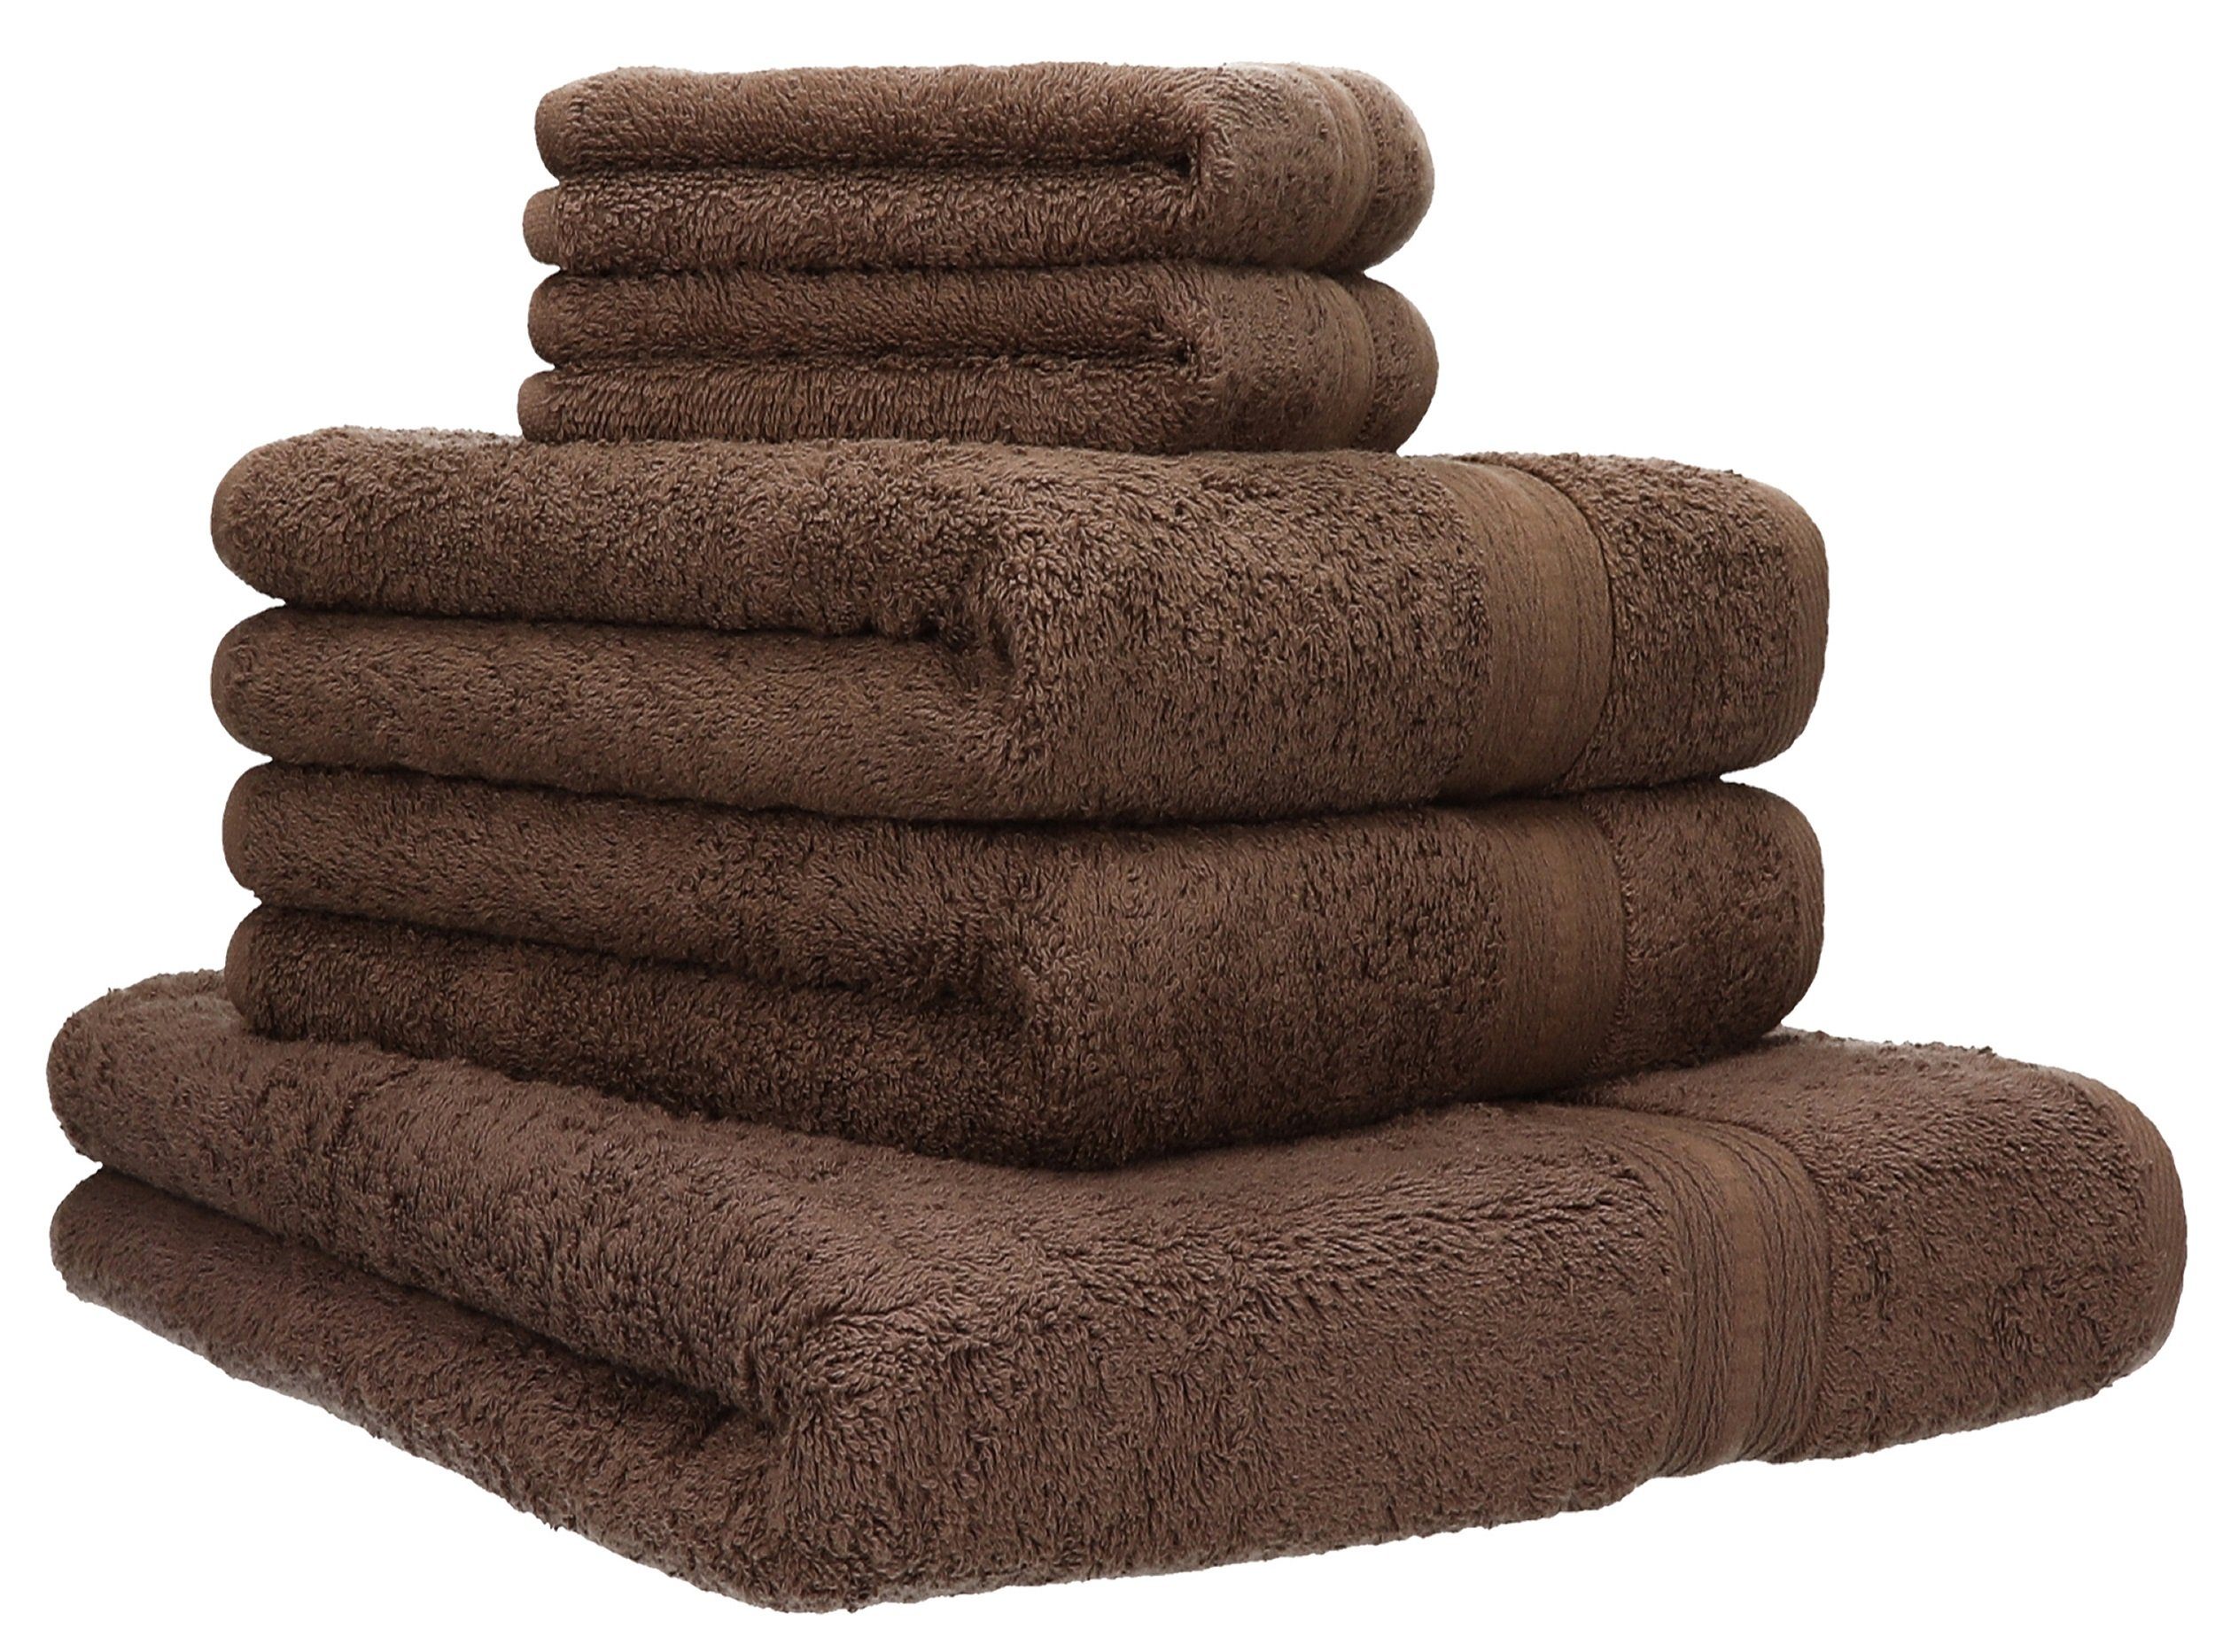 Betz Handtuch Set 5-TLG. Handtuch-Set Gold 100% Baumwolle Qualität 600 g/m² 1 Duschtuch 2 Handtücher 2 Seiftücher Farbe nussbraun, 100% Baumwolle